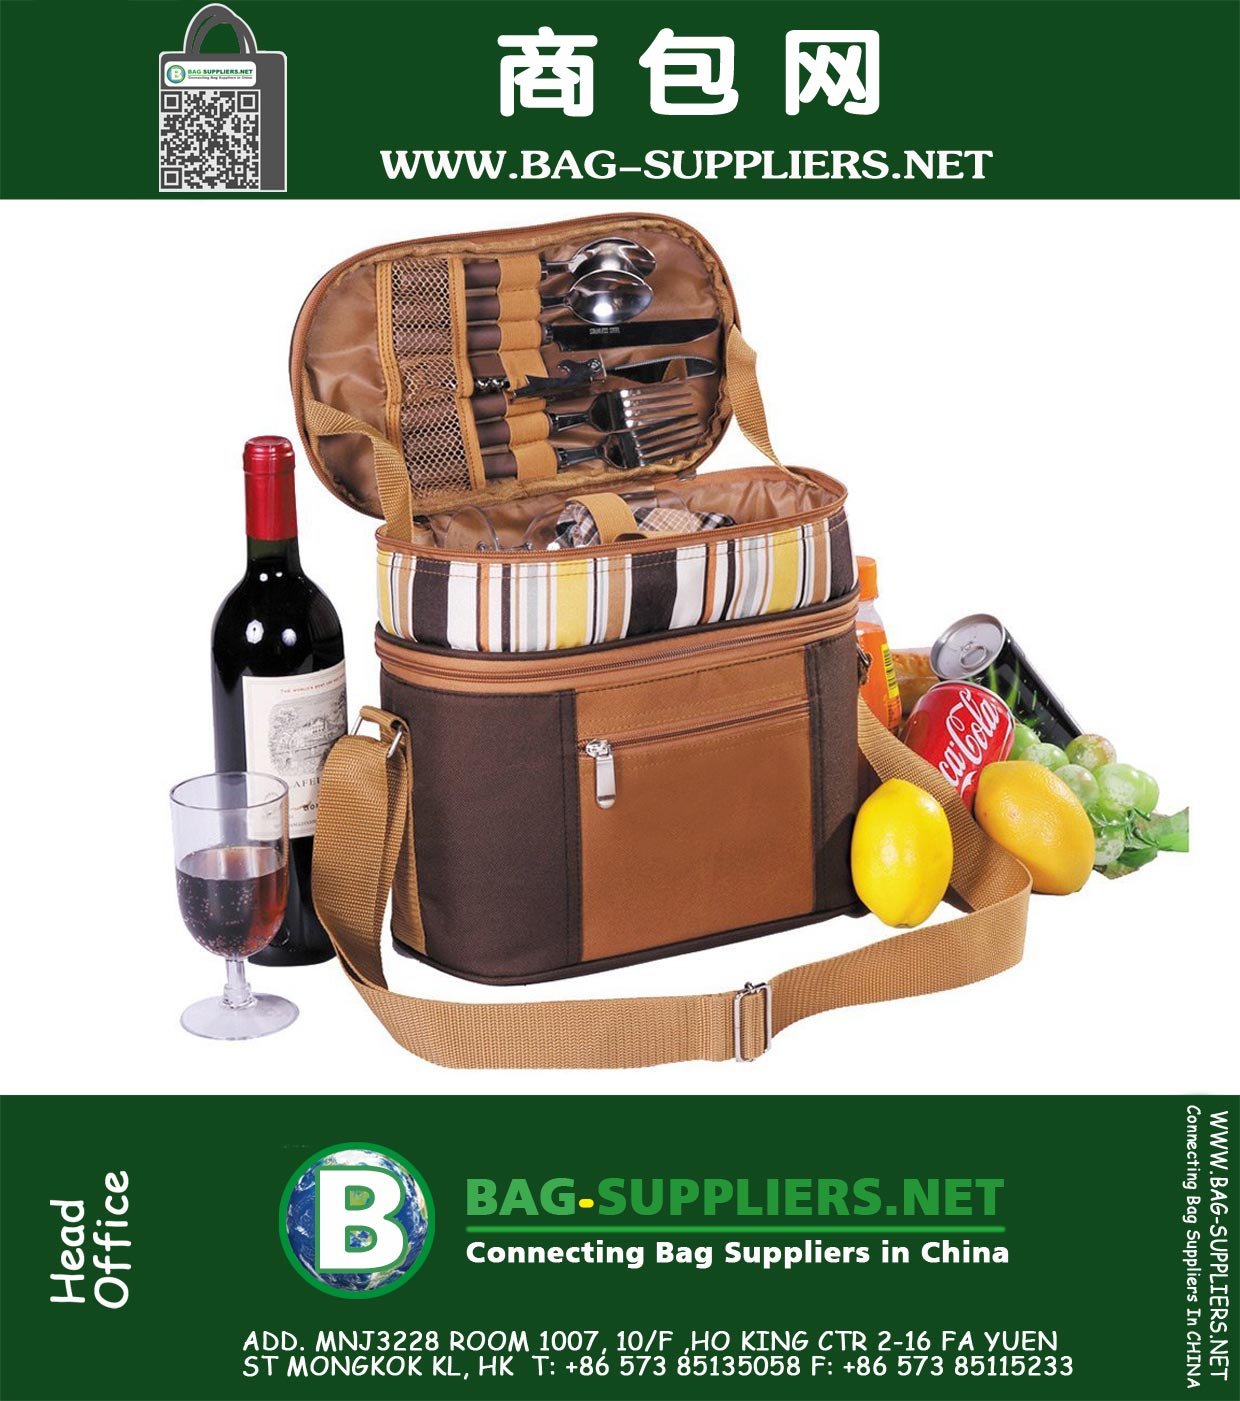 
2 Personen-Picknick-Rucksack mit Insulated Cool Bag Kühlfach und Besteck, Kaffee